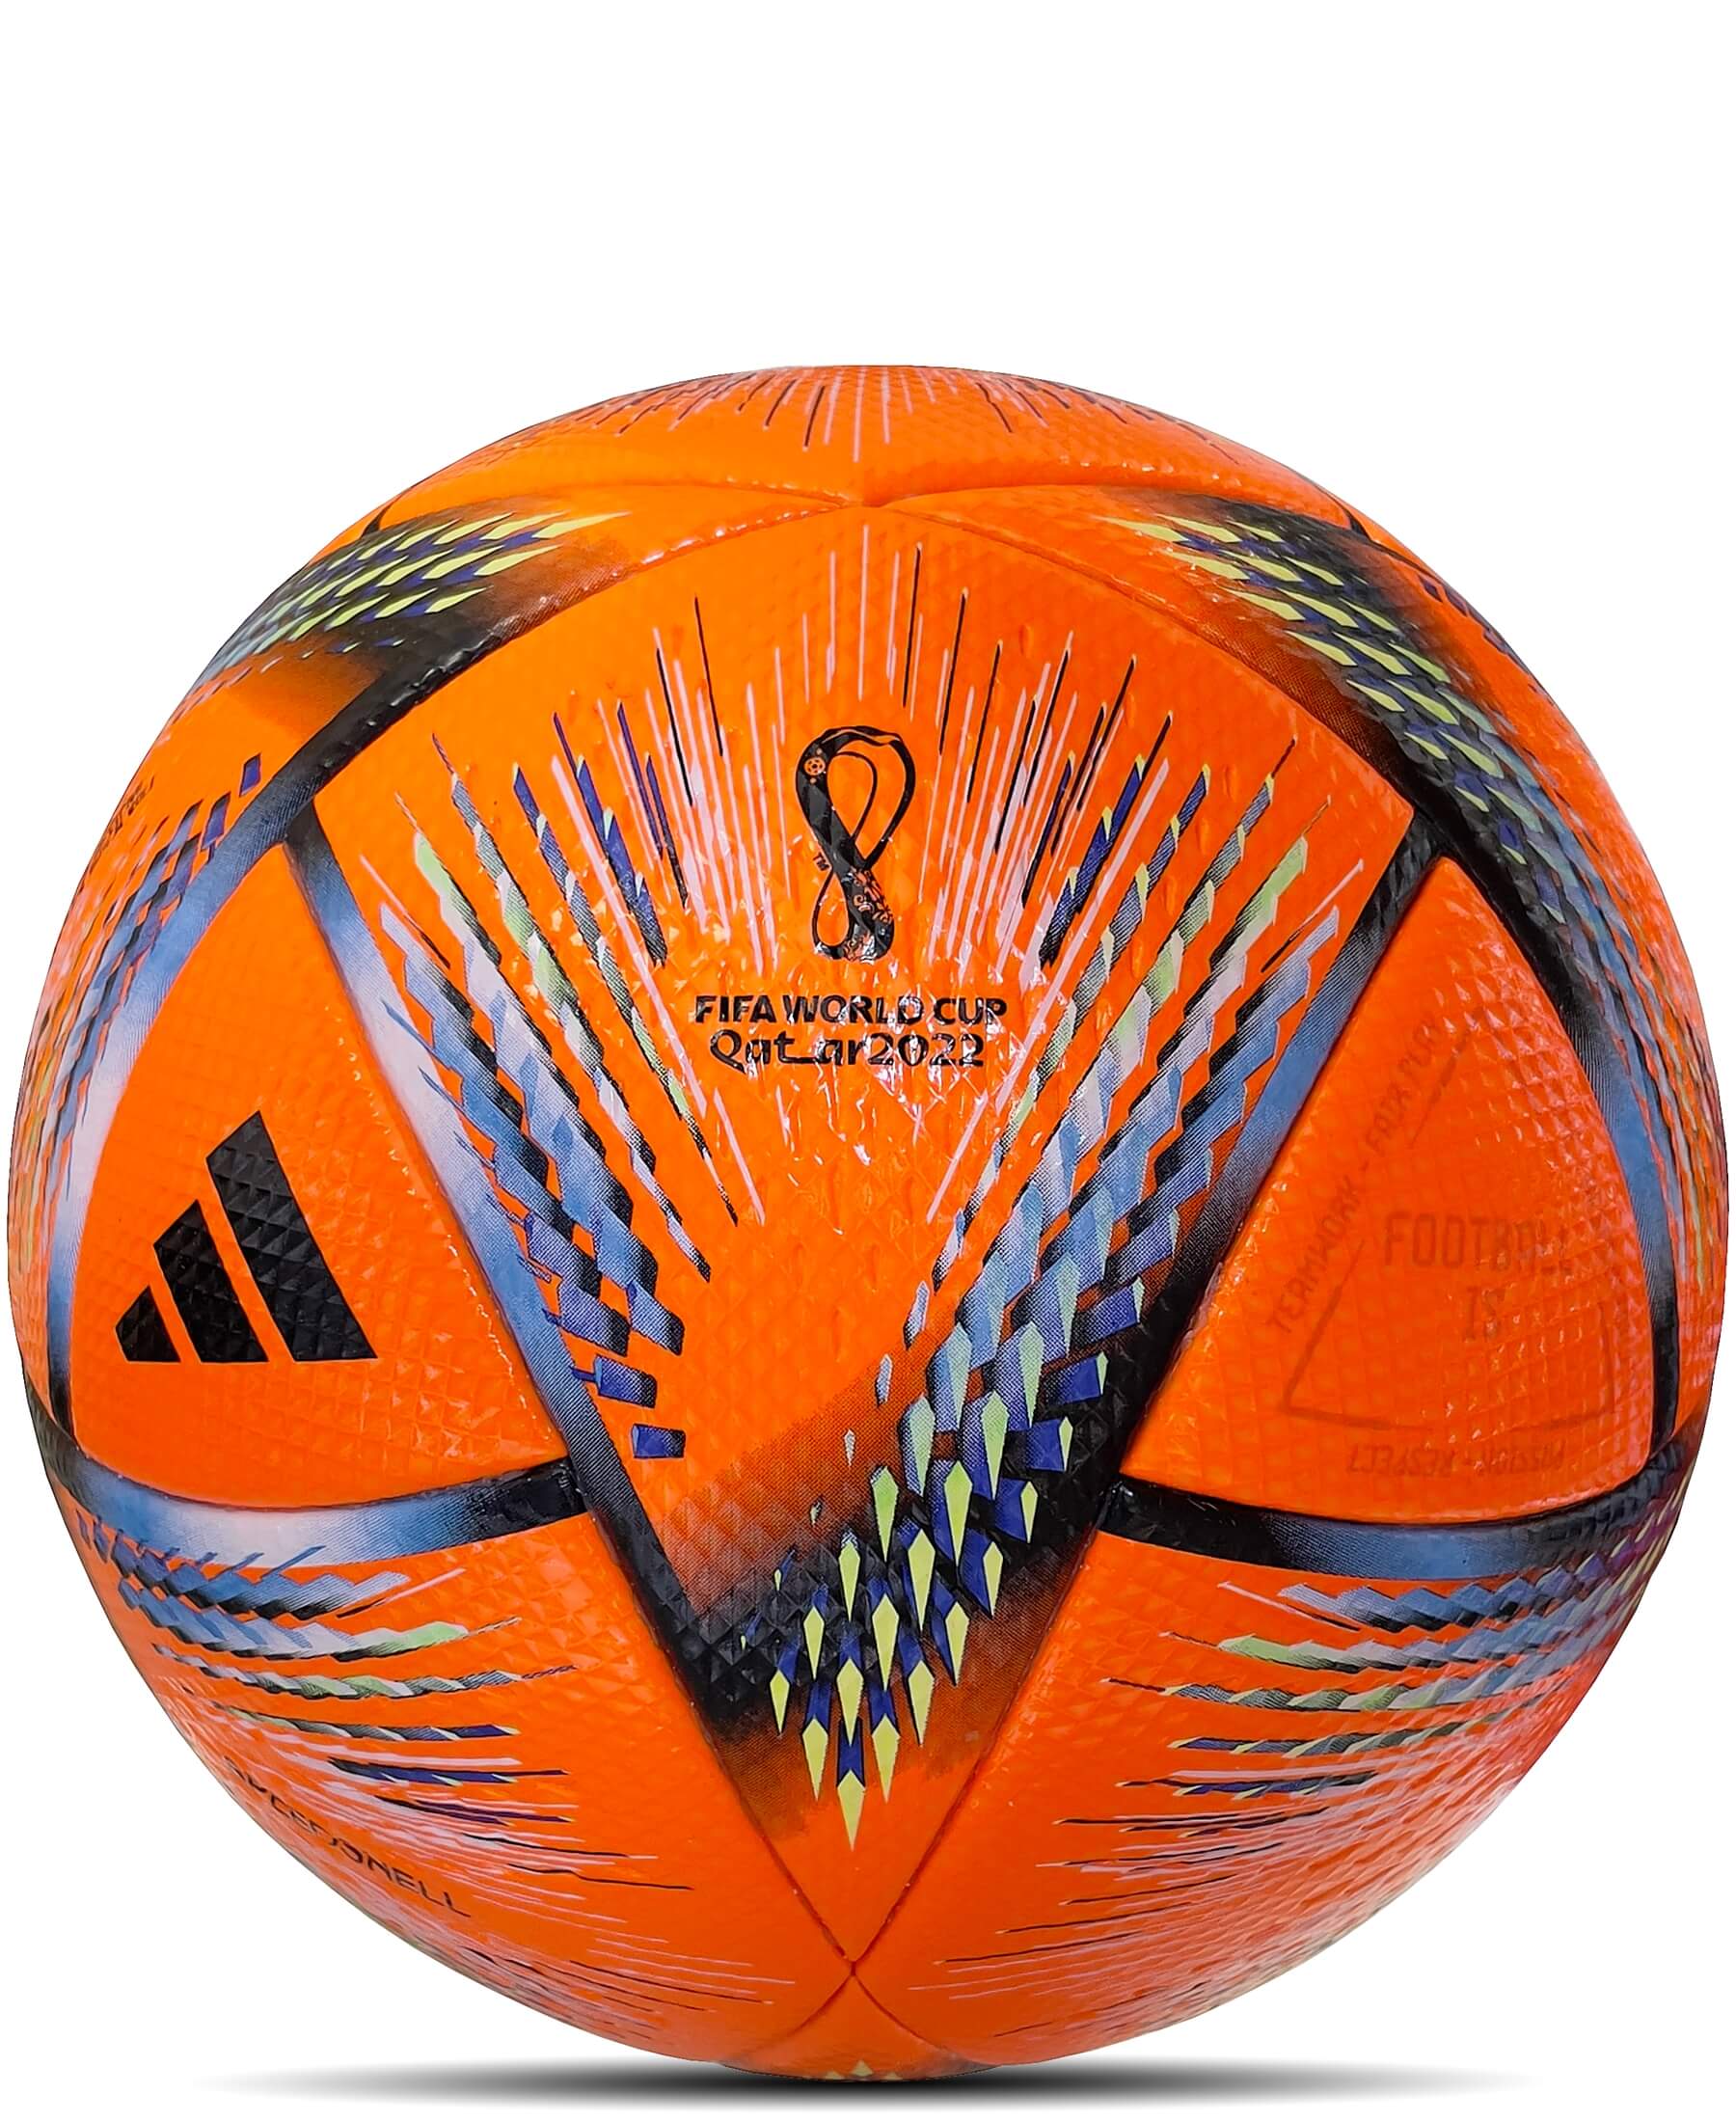 Adidas Official Match Ball Winter Al Rihla FIFA WM Qatar 2022 H57781: Der offizielle Matchball der FIFA Weltmeisterschaft Qatar 2022. Entdecke die Präzision und Technologie dieses hochwertigen Spielballs. Jetzt bei SHOP4TEAMSPORT erhältlich. Sichere dir diesen exklusiven Ball und erlebe das Fußballturnier auf höchstem Niveau.